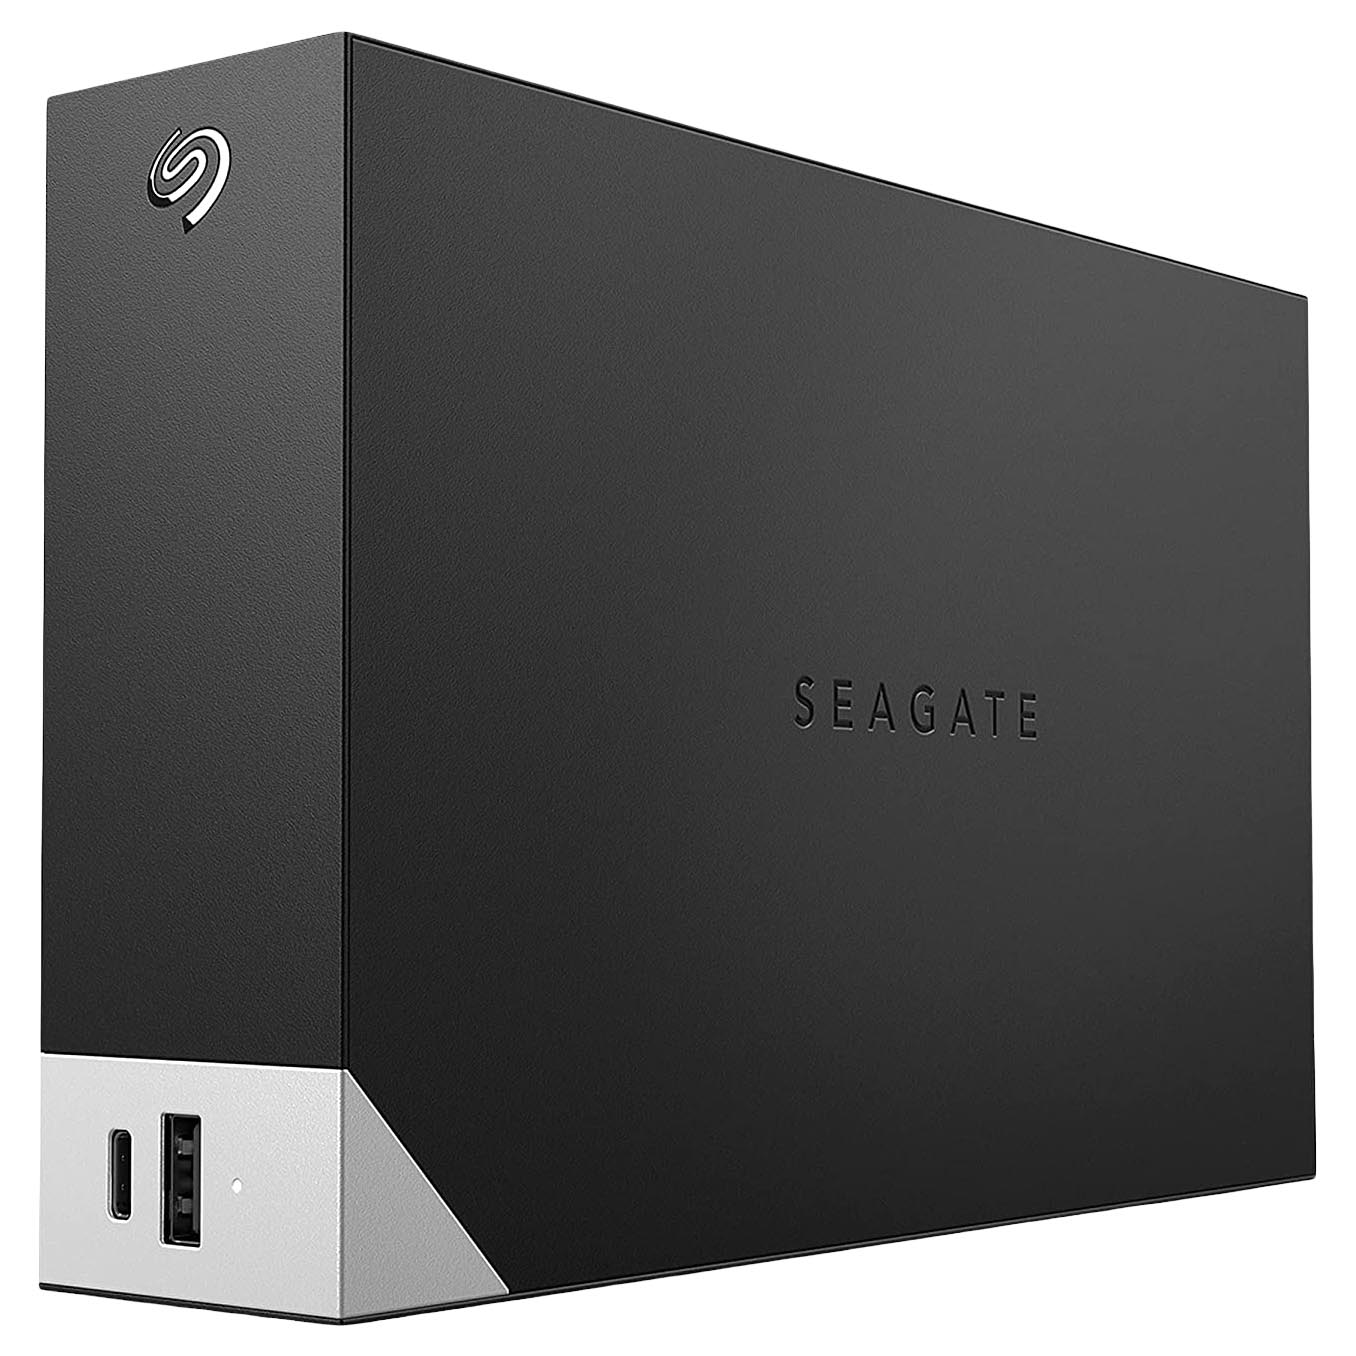 Внешний жесткий диск Seagate One Touch, STLC14000400, 14Тб, 3.5 внешний жесткий диск 2 5 4 tb usb 3 0 seagate one touch stkc4000401 серебристый